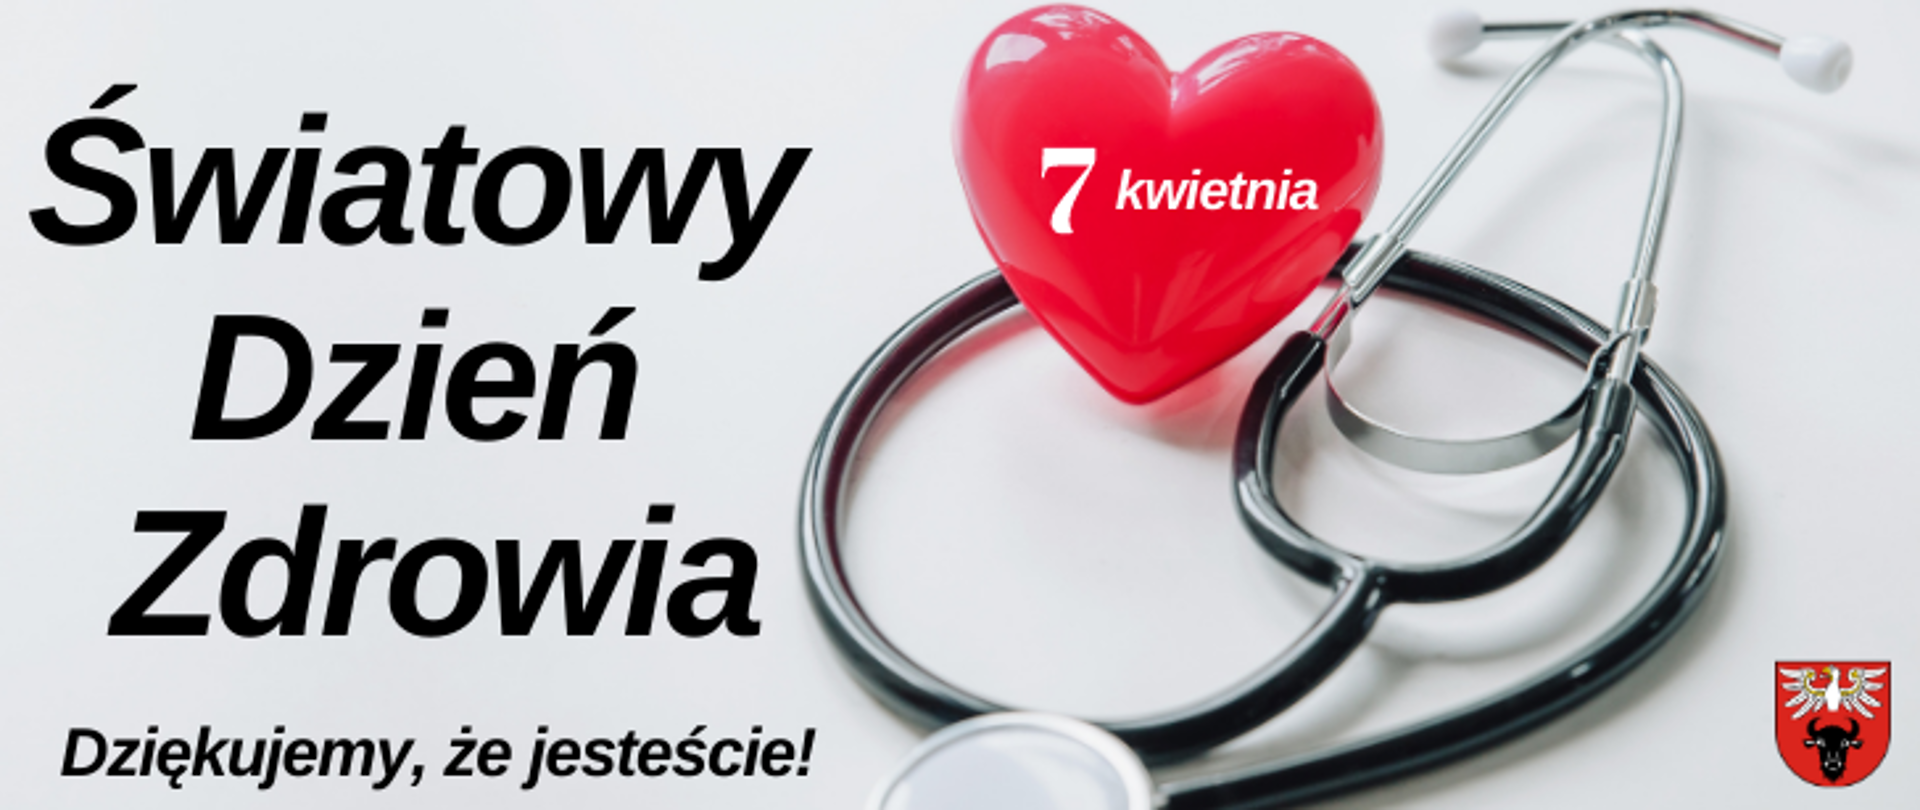 na obrazku znajduje się grafika z: czerwonym sercem, na którym jest napis "7 kwietnia" i stetoskopem, z lewej strony napis "Światowy Dzień Zdrowia dziękujemy, że jesteście!", a w prawym dolnym rogu znajduje się logo powiatu zambrowskiego